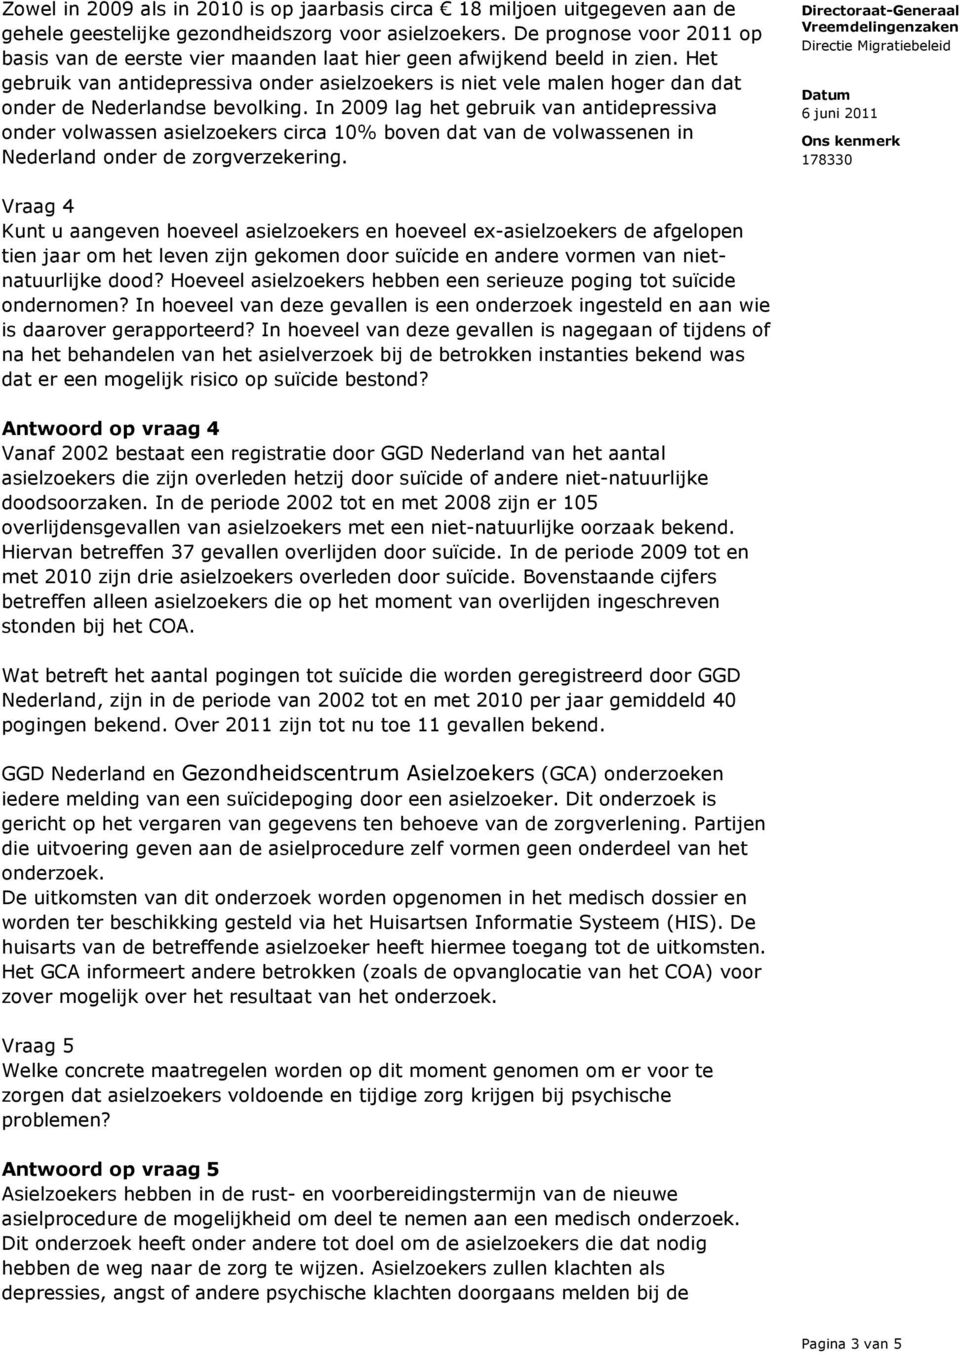 Het gebruik van antidepressiva onder asielzoekers is niet vele malen hoger dan dat onder de Nederlandse bevolking.